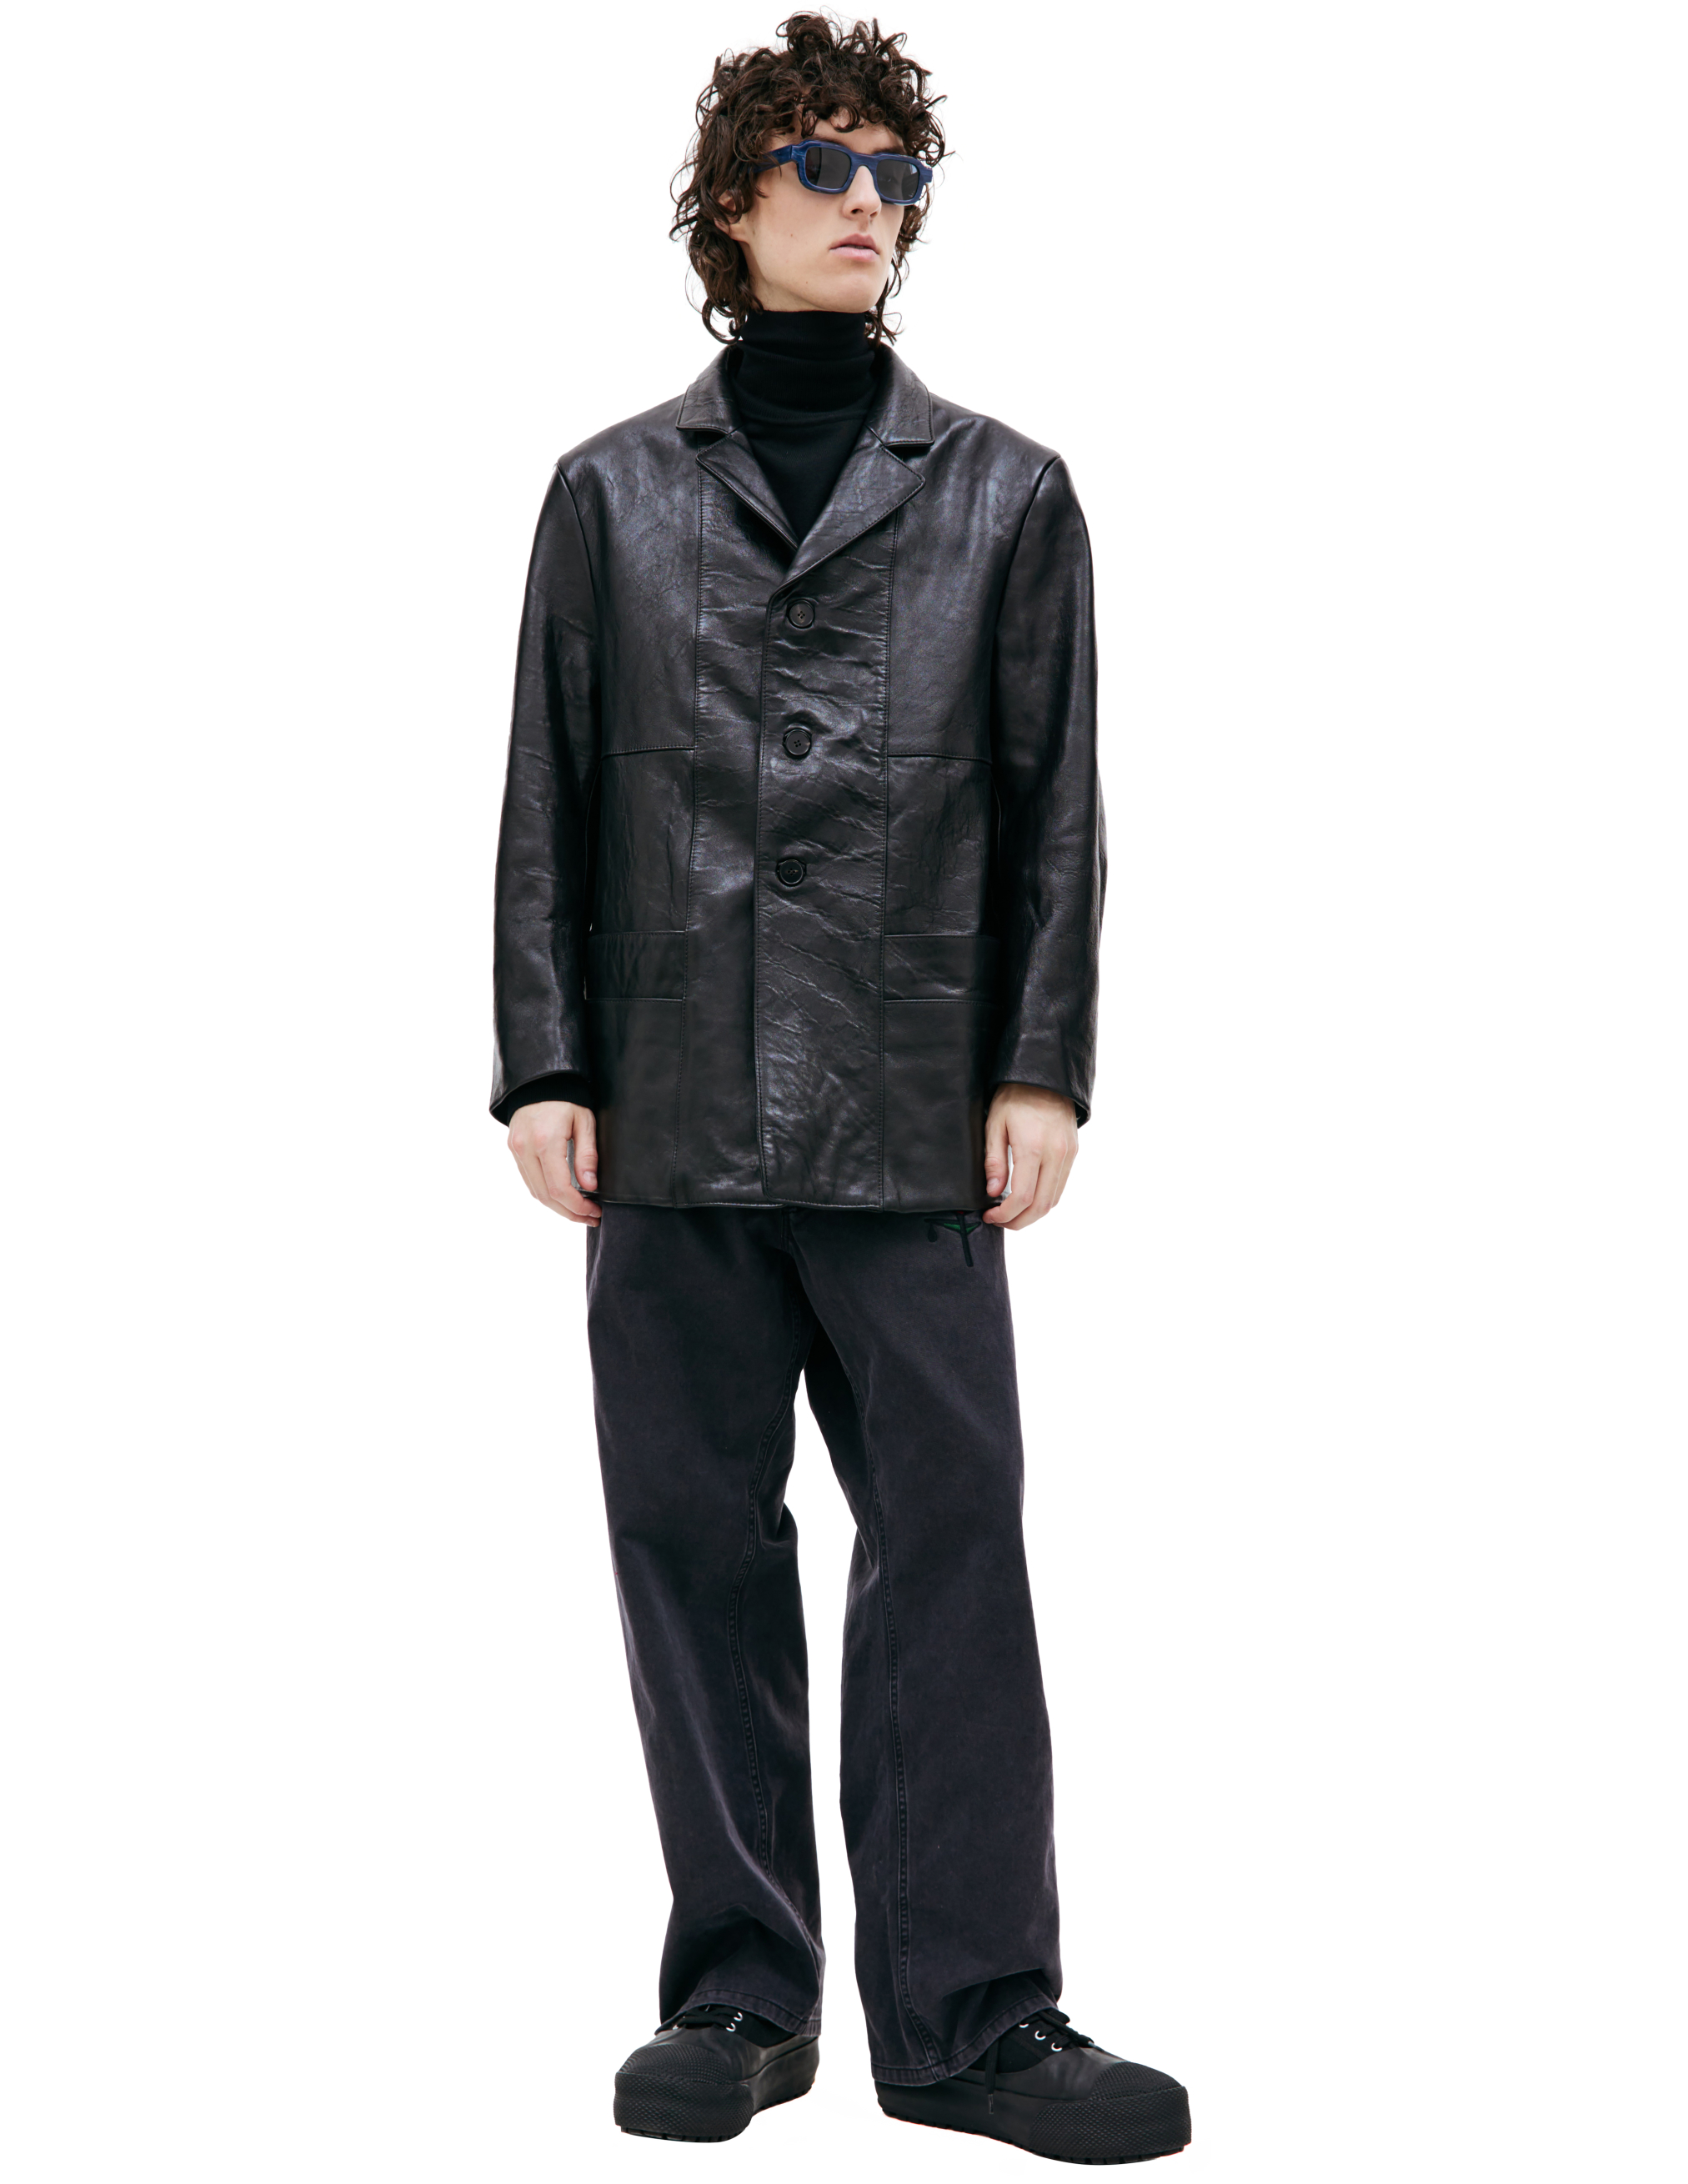 Черный кожаный пиджак Enfants Riches Deprimes 030-405, размер L;XL - фото 1